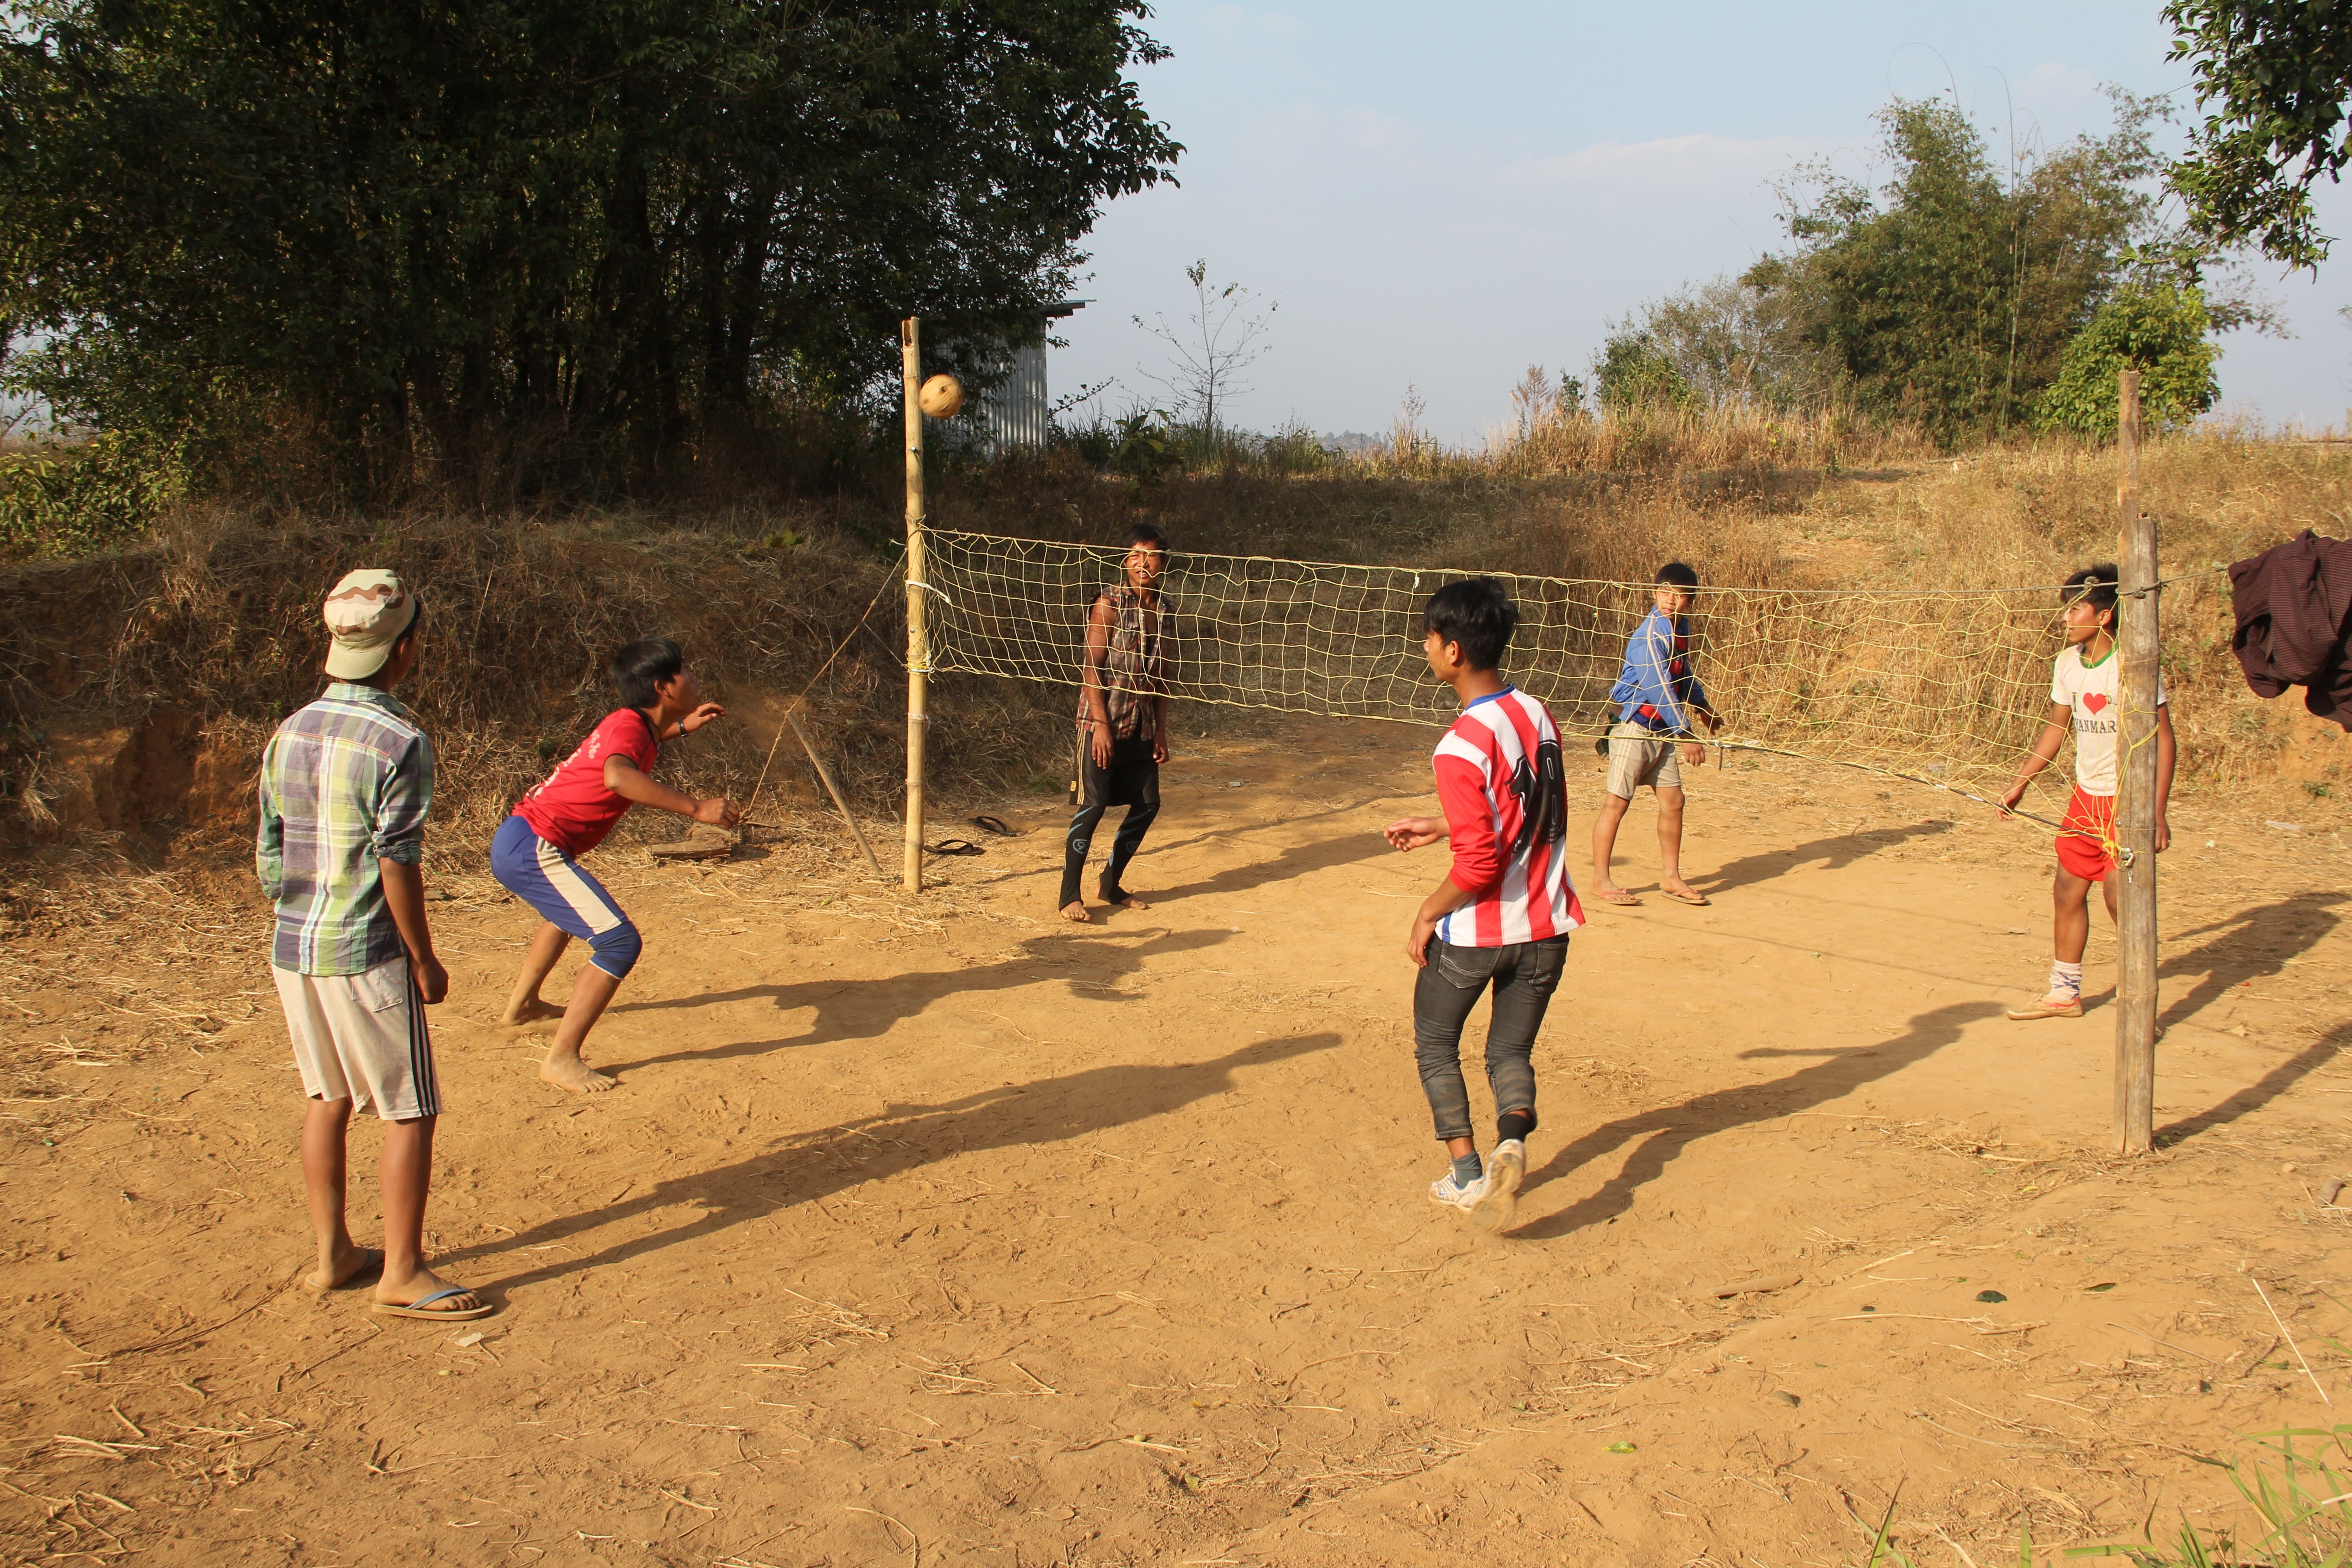 Une partie de chinlon, jeu traditionnel birman qui s'apparente au tennis-ballon, mais avec une petite balle en osier et un filet de badminton (© Jérôme Decoster).